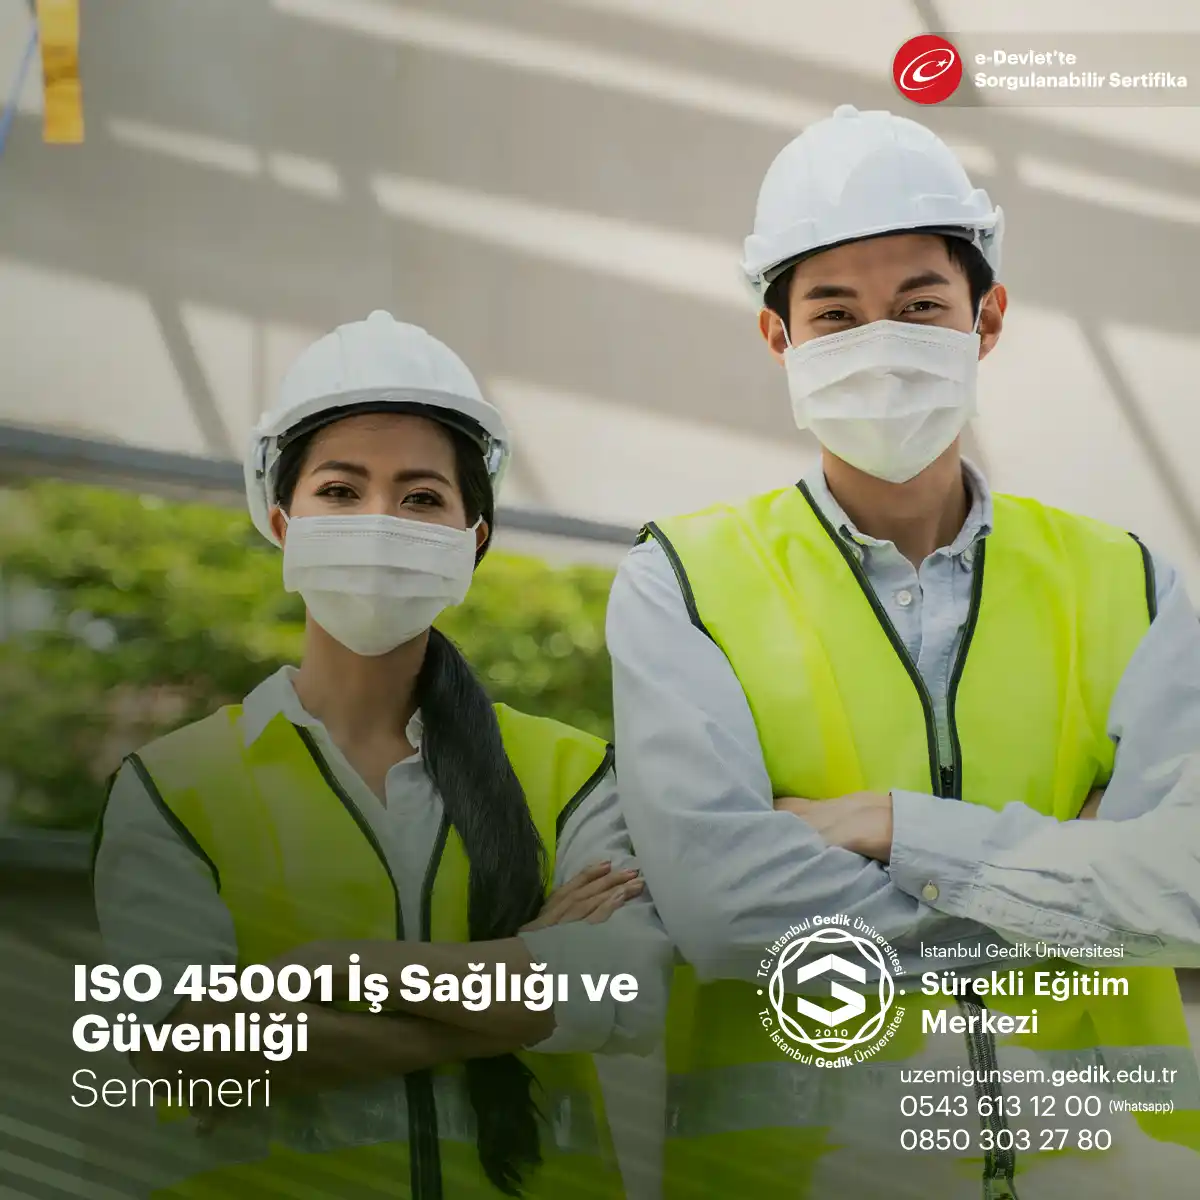 ISO 45001, iş sağlığı ve güvenliği yönetim sistemlerini belirleyen uluslararası bir standarttır.